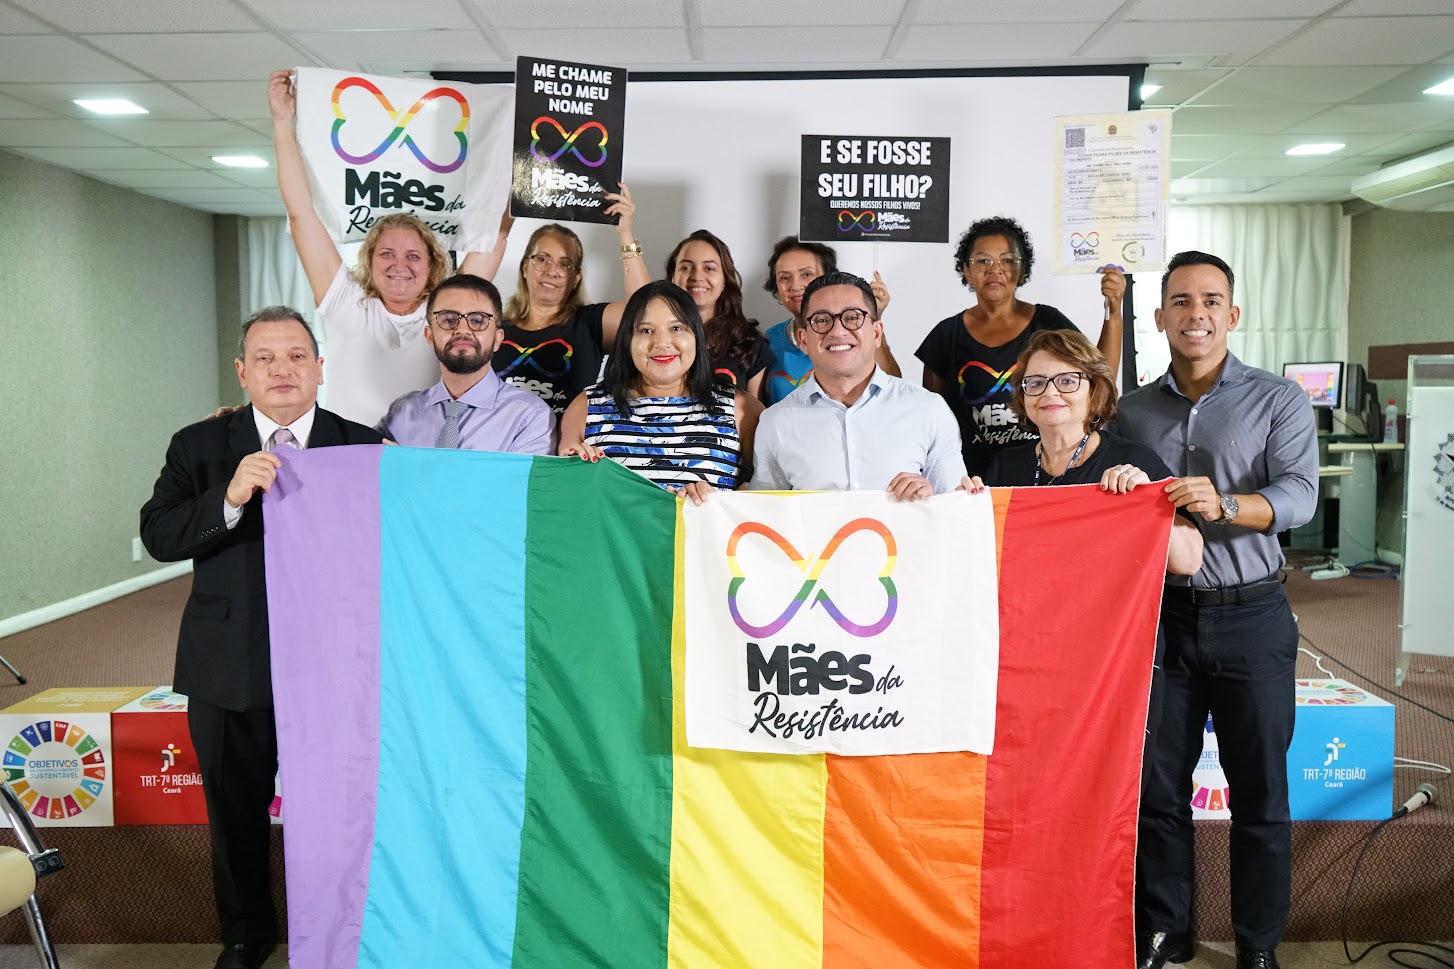 Justiça do Trabalho do Ceará promove debate no Dia Internacional do Orgulho LGBTQIAPN+